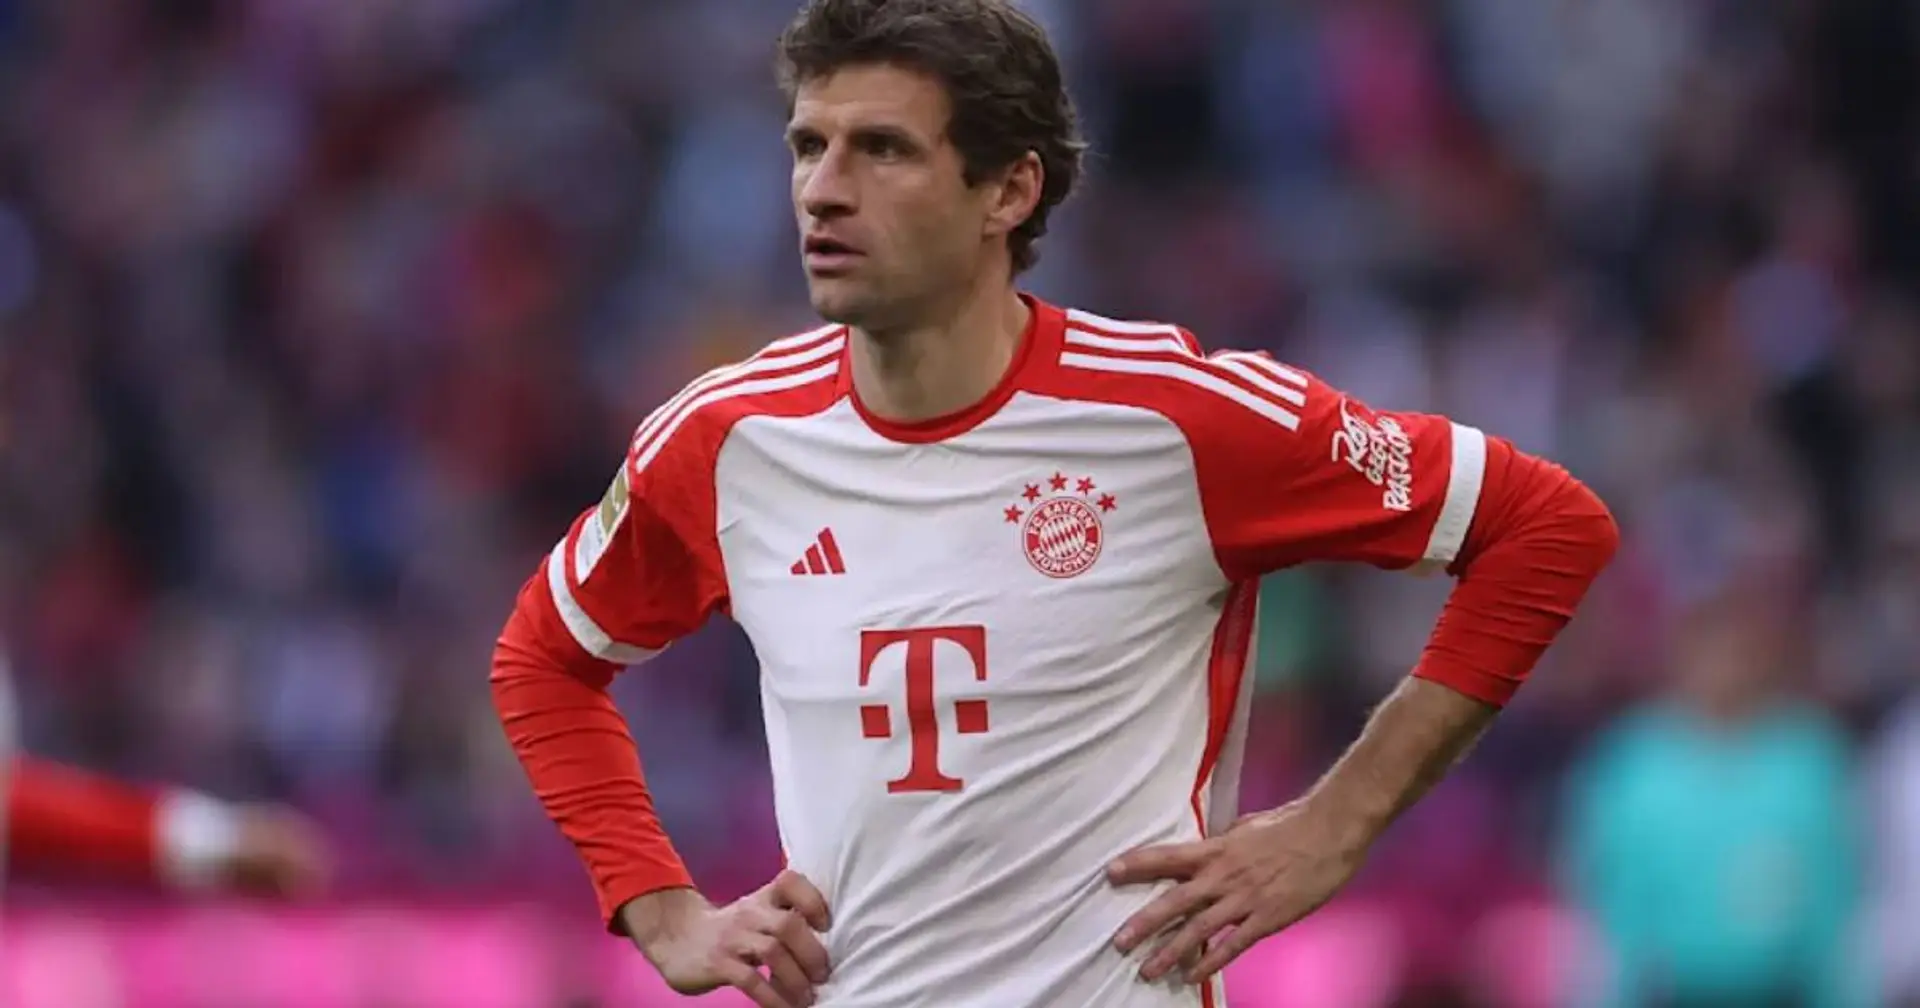 Ein weiterer besonderer Meilenstein für Müller in Sicht: Nur 3 Bayern-Profis erreichten ihn vor ihm